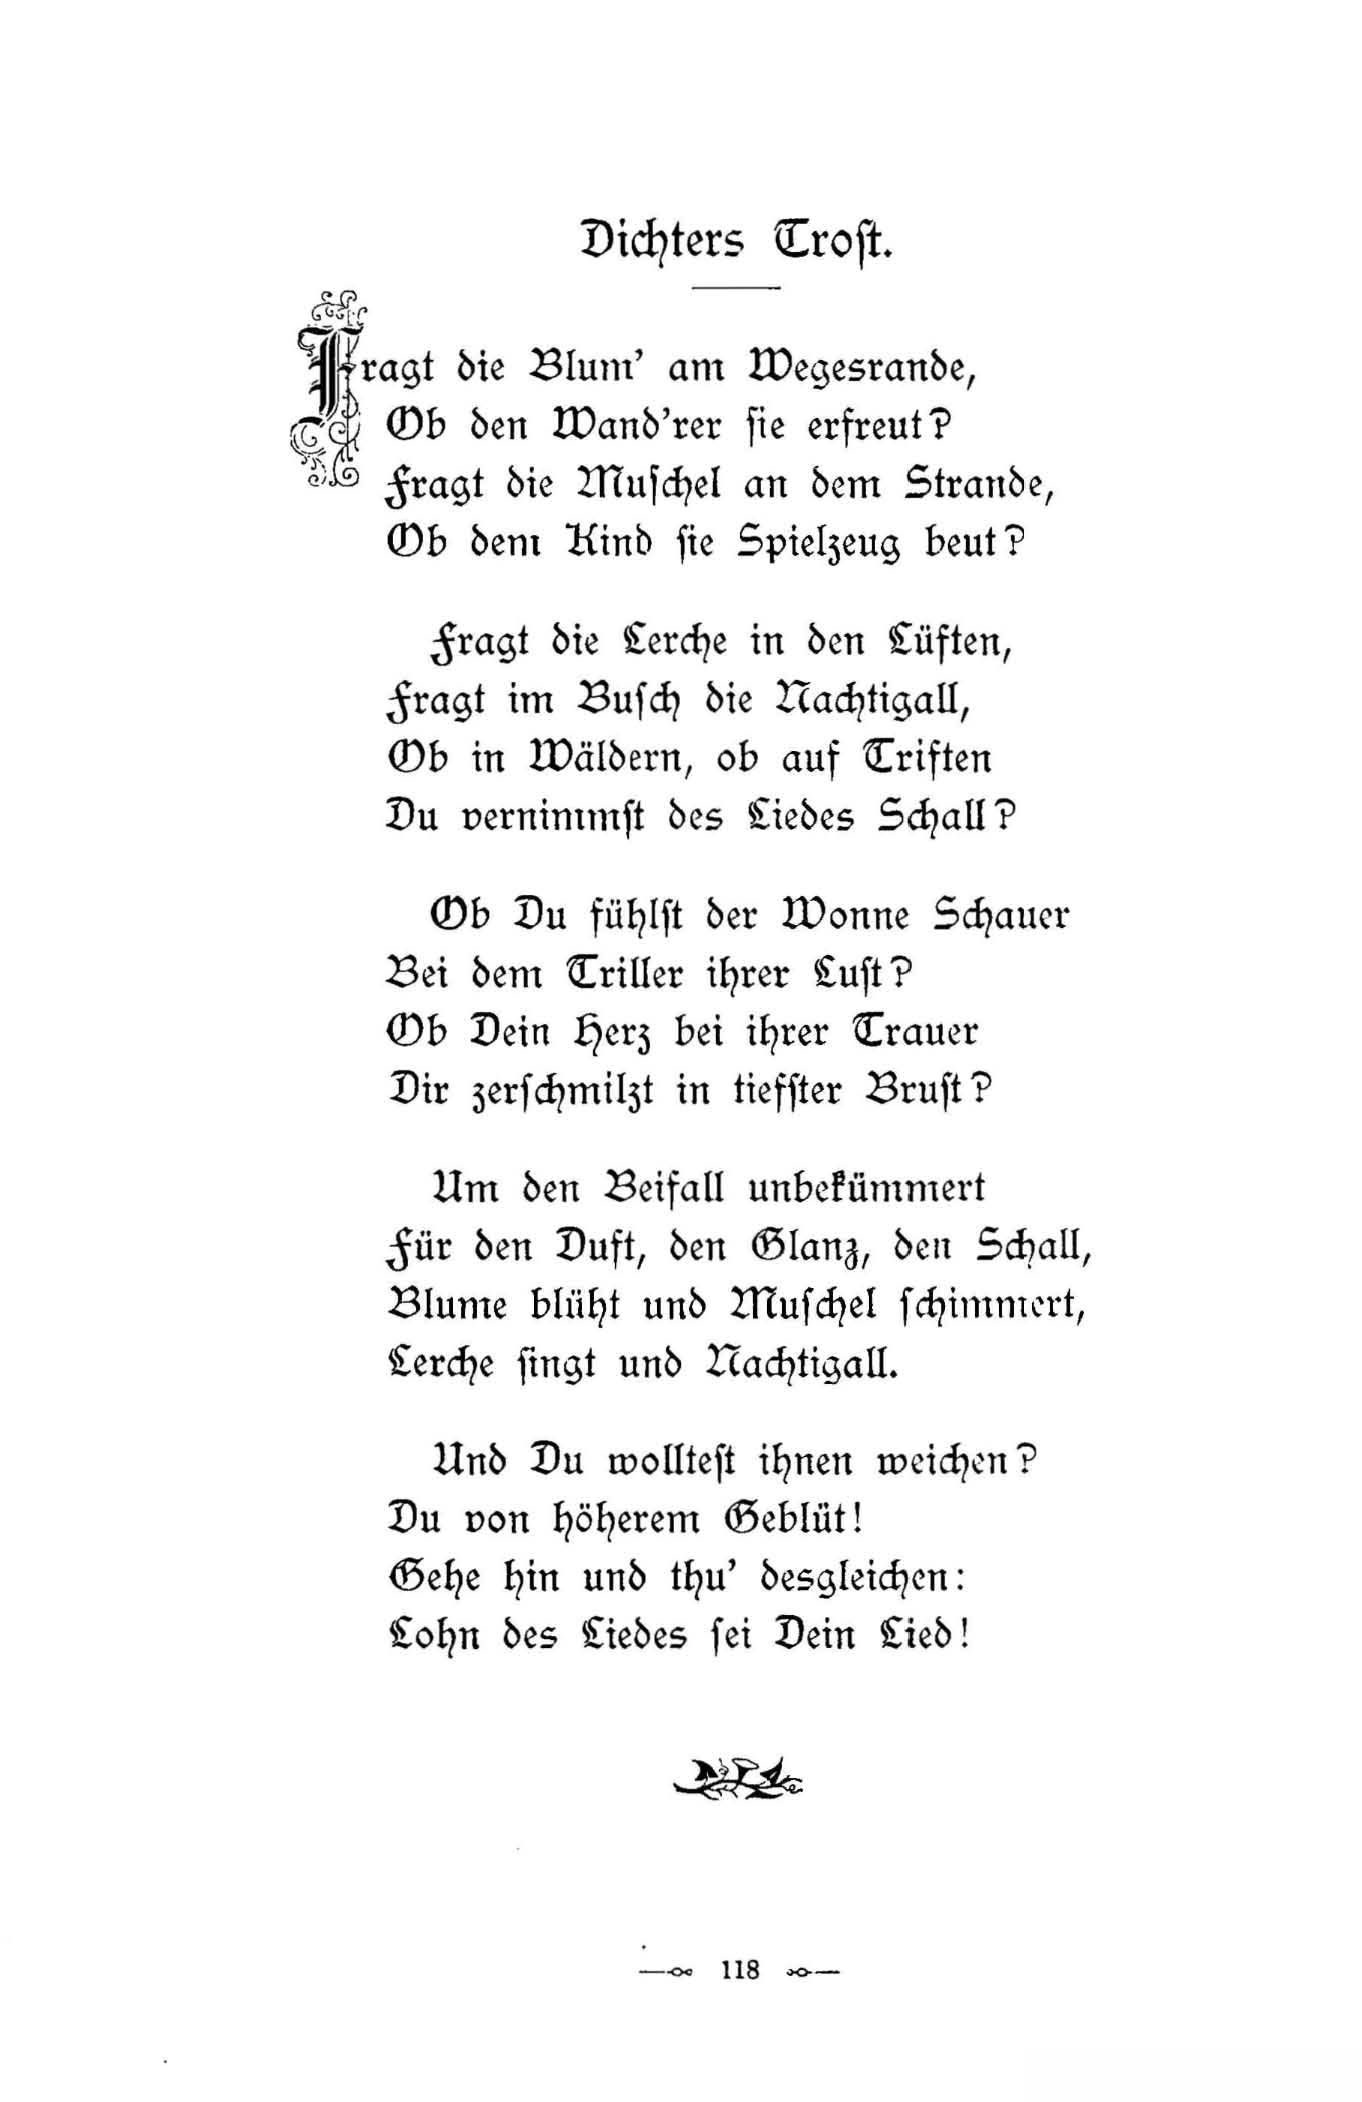 Dichters Trost (1896) | 1. (118) Основной текст